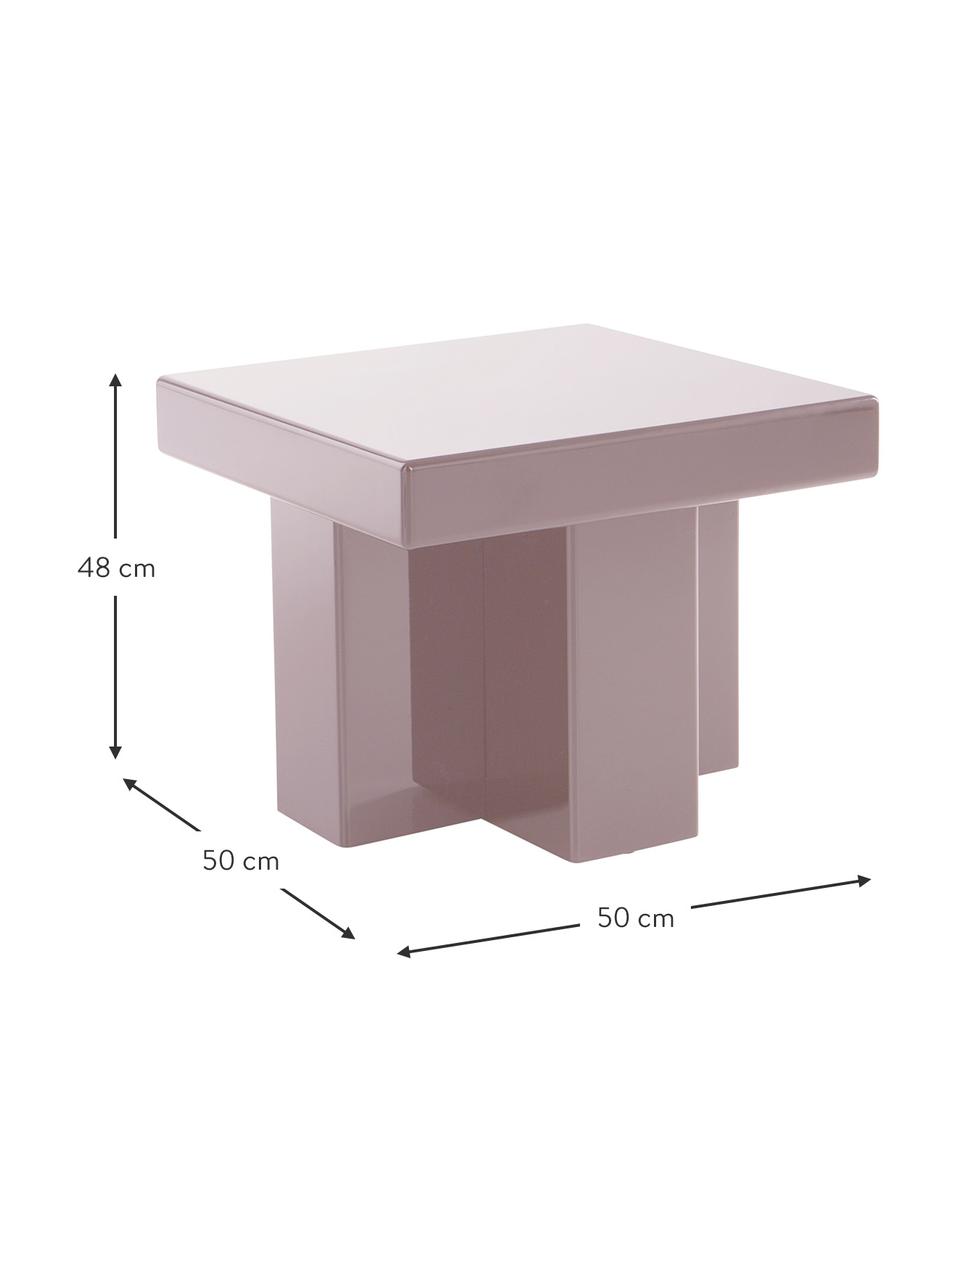 Odkládací stolek Crozz, Lakovaná MDF deska (dřevovláknitá deska střední hustoty), Růžová, Š 50 cm, V 48 cm